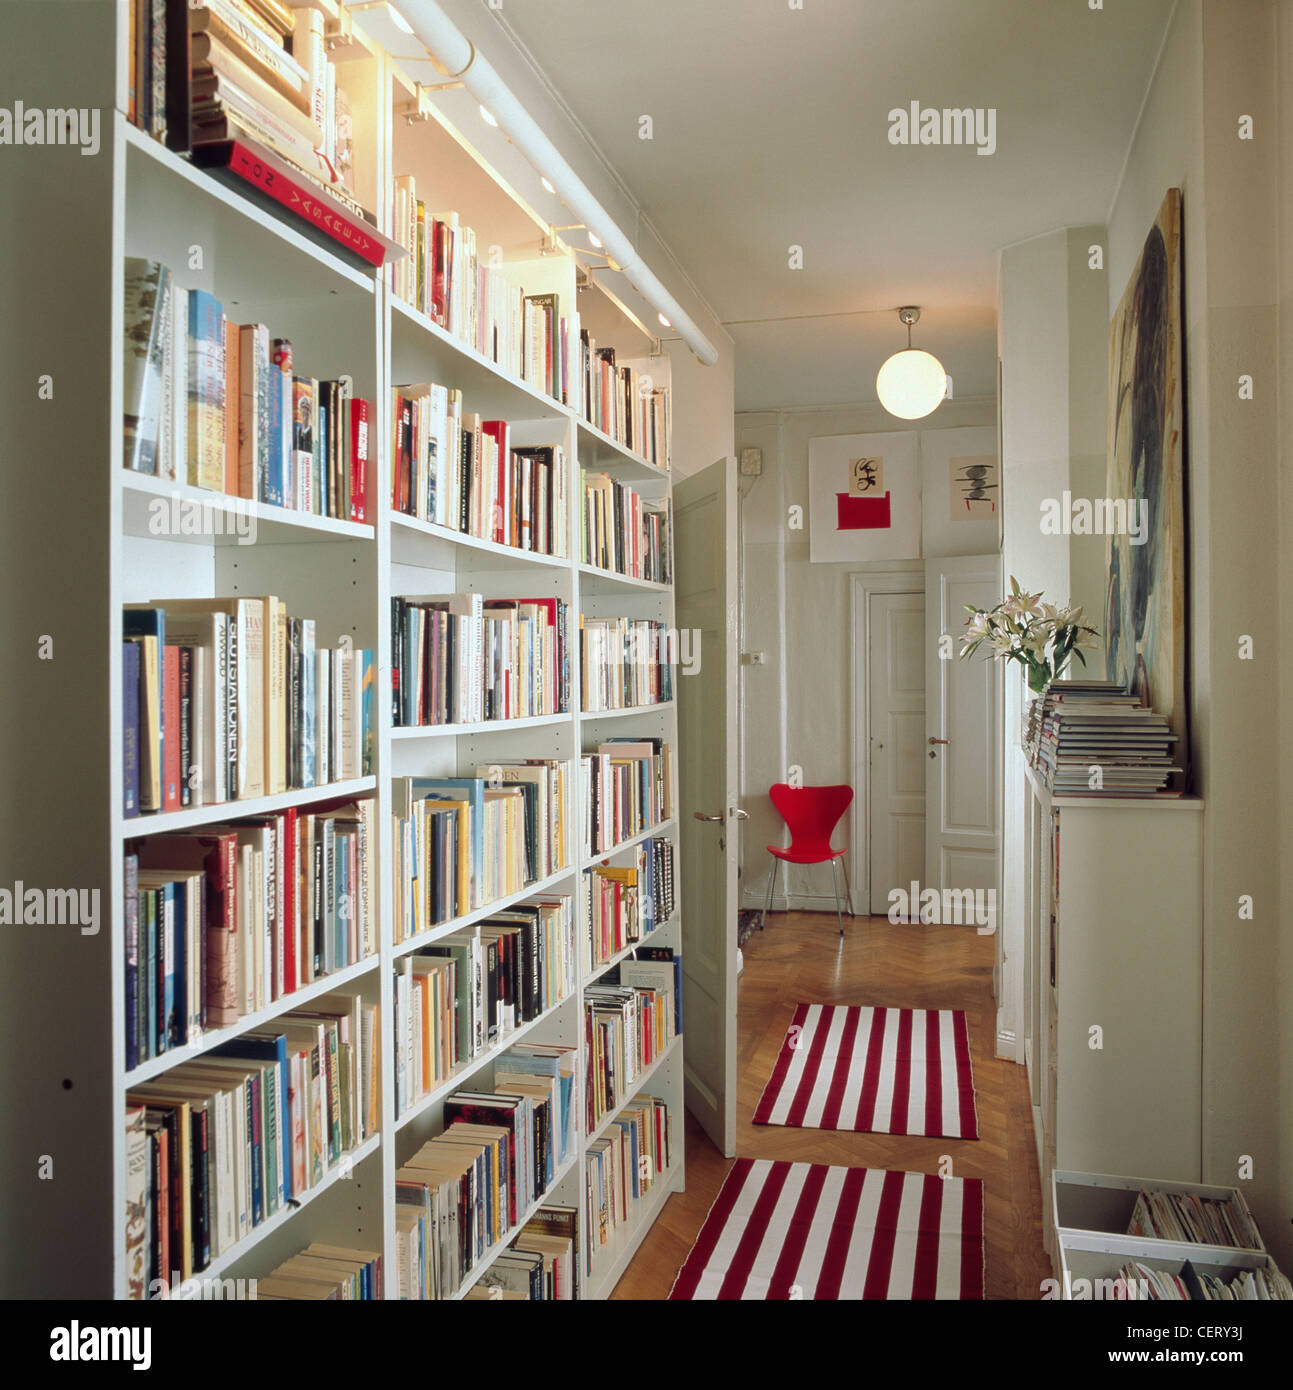 Flur mit weißen Bücherregal entlang einer Wand, Parkettböden und rot-weiß  gestreifte Teppiche Magazin Stockfotografie - Alamy